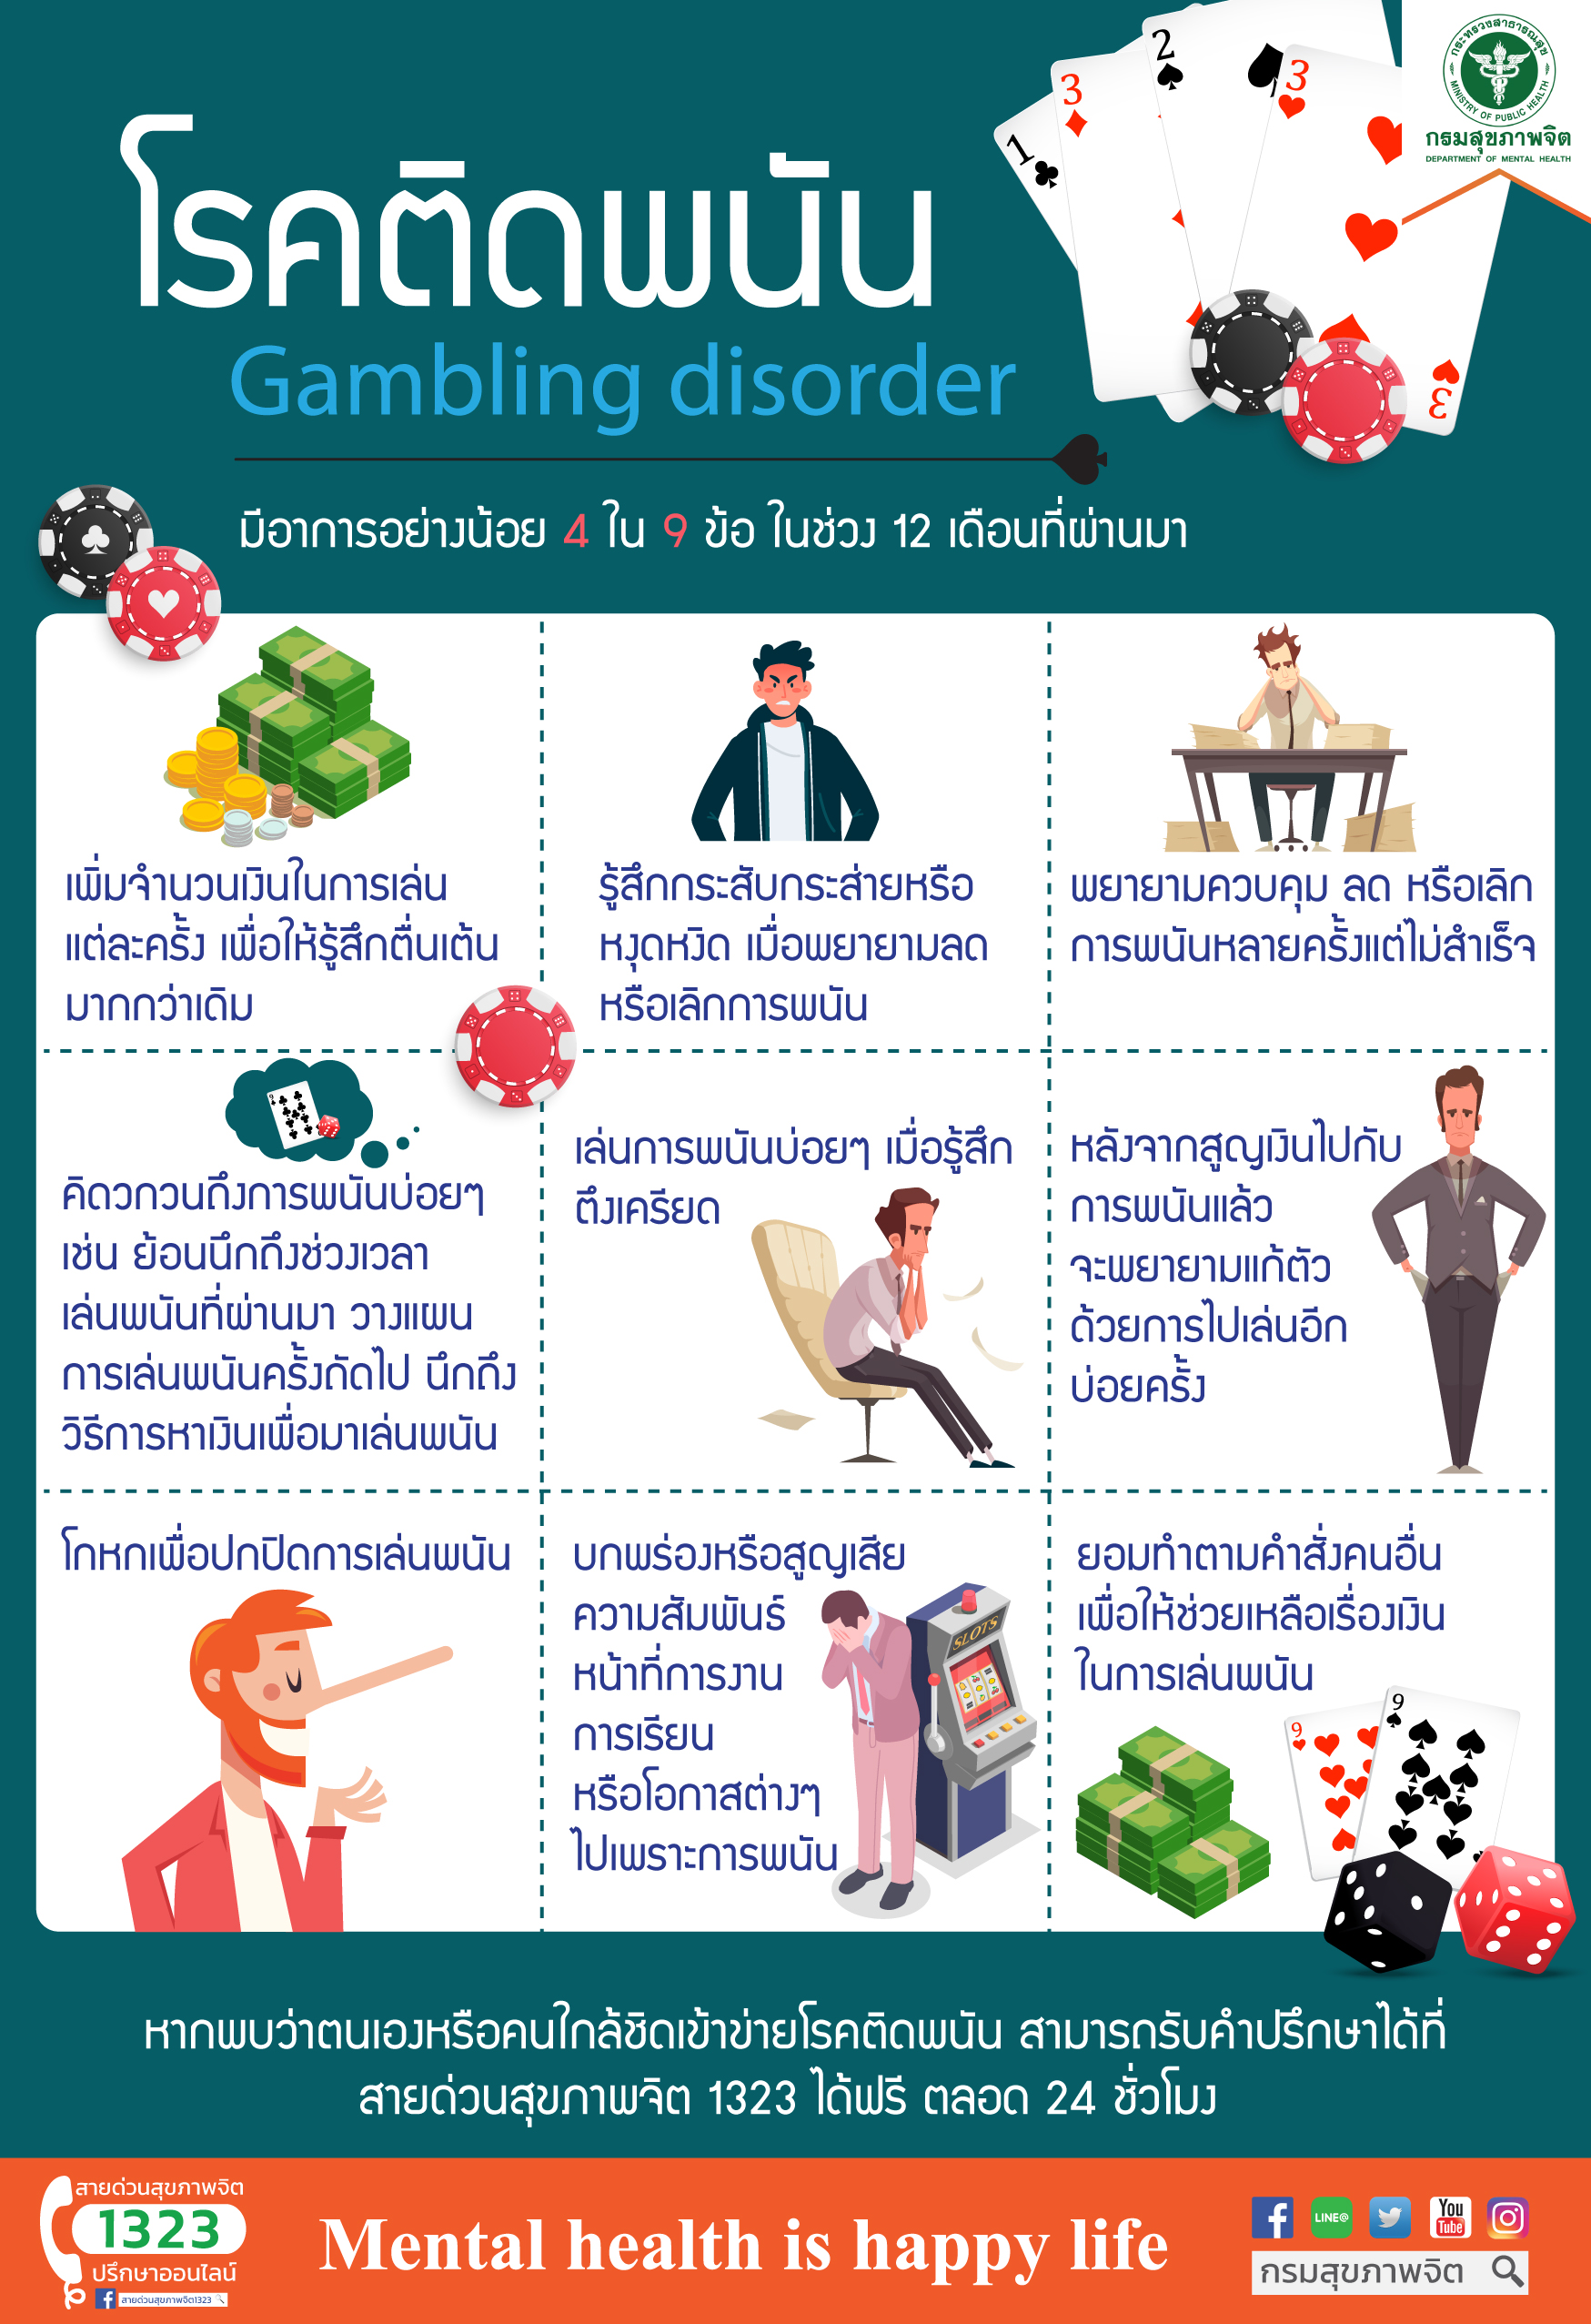 Gambling disorder